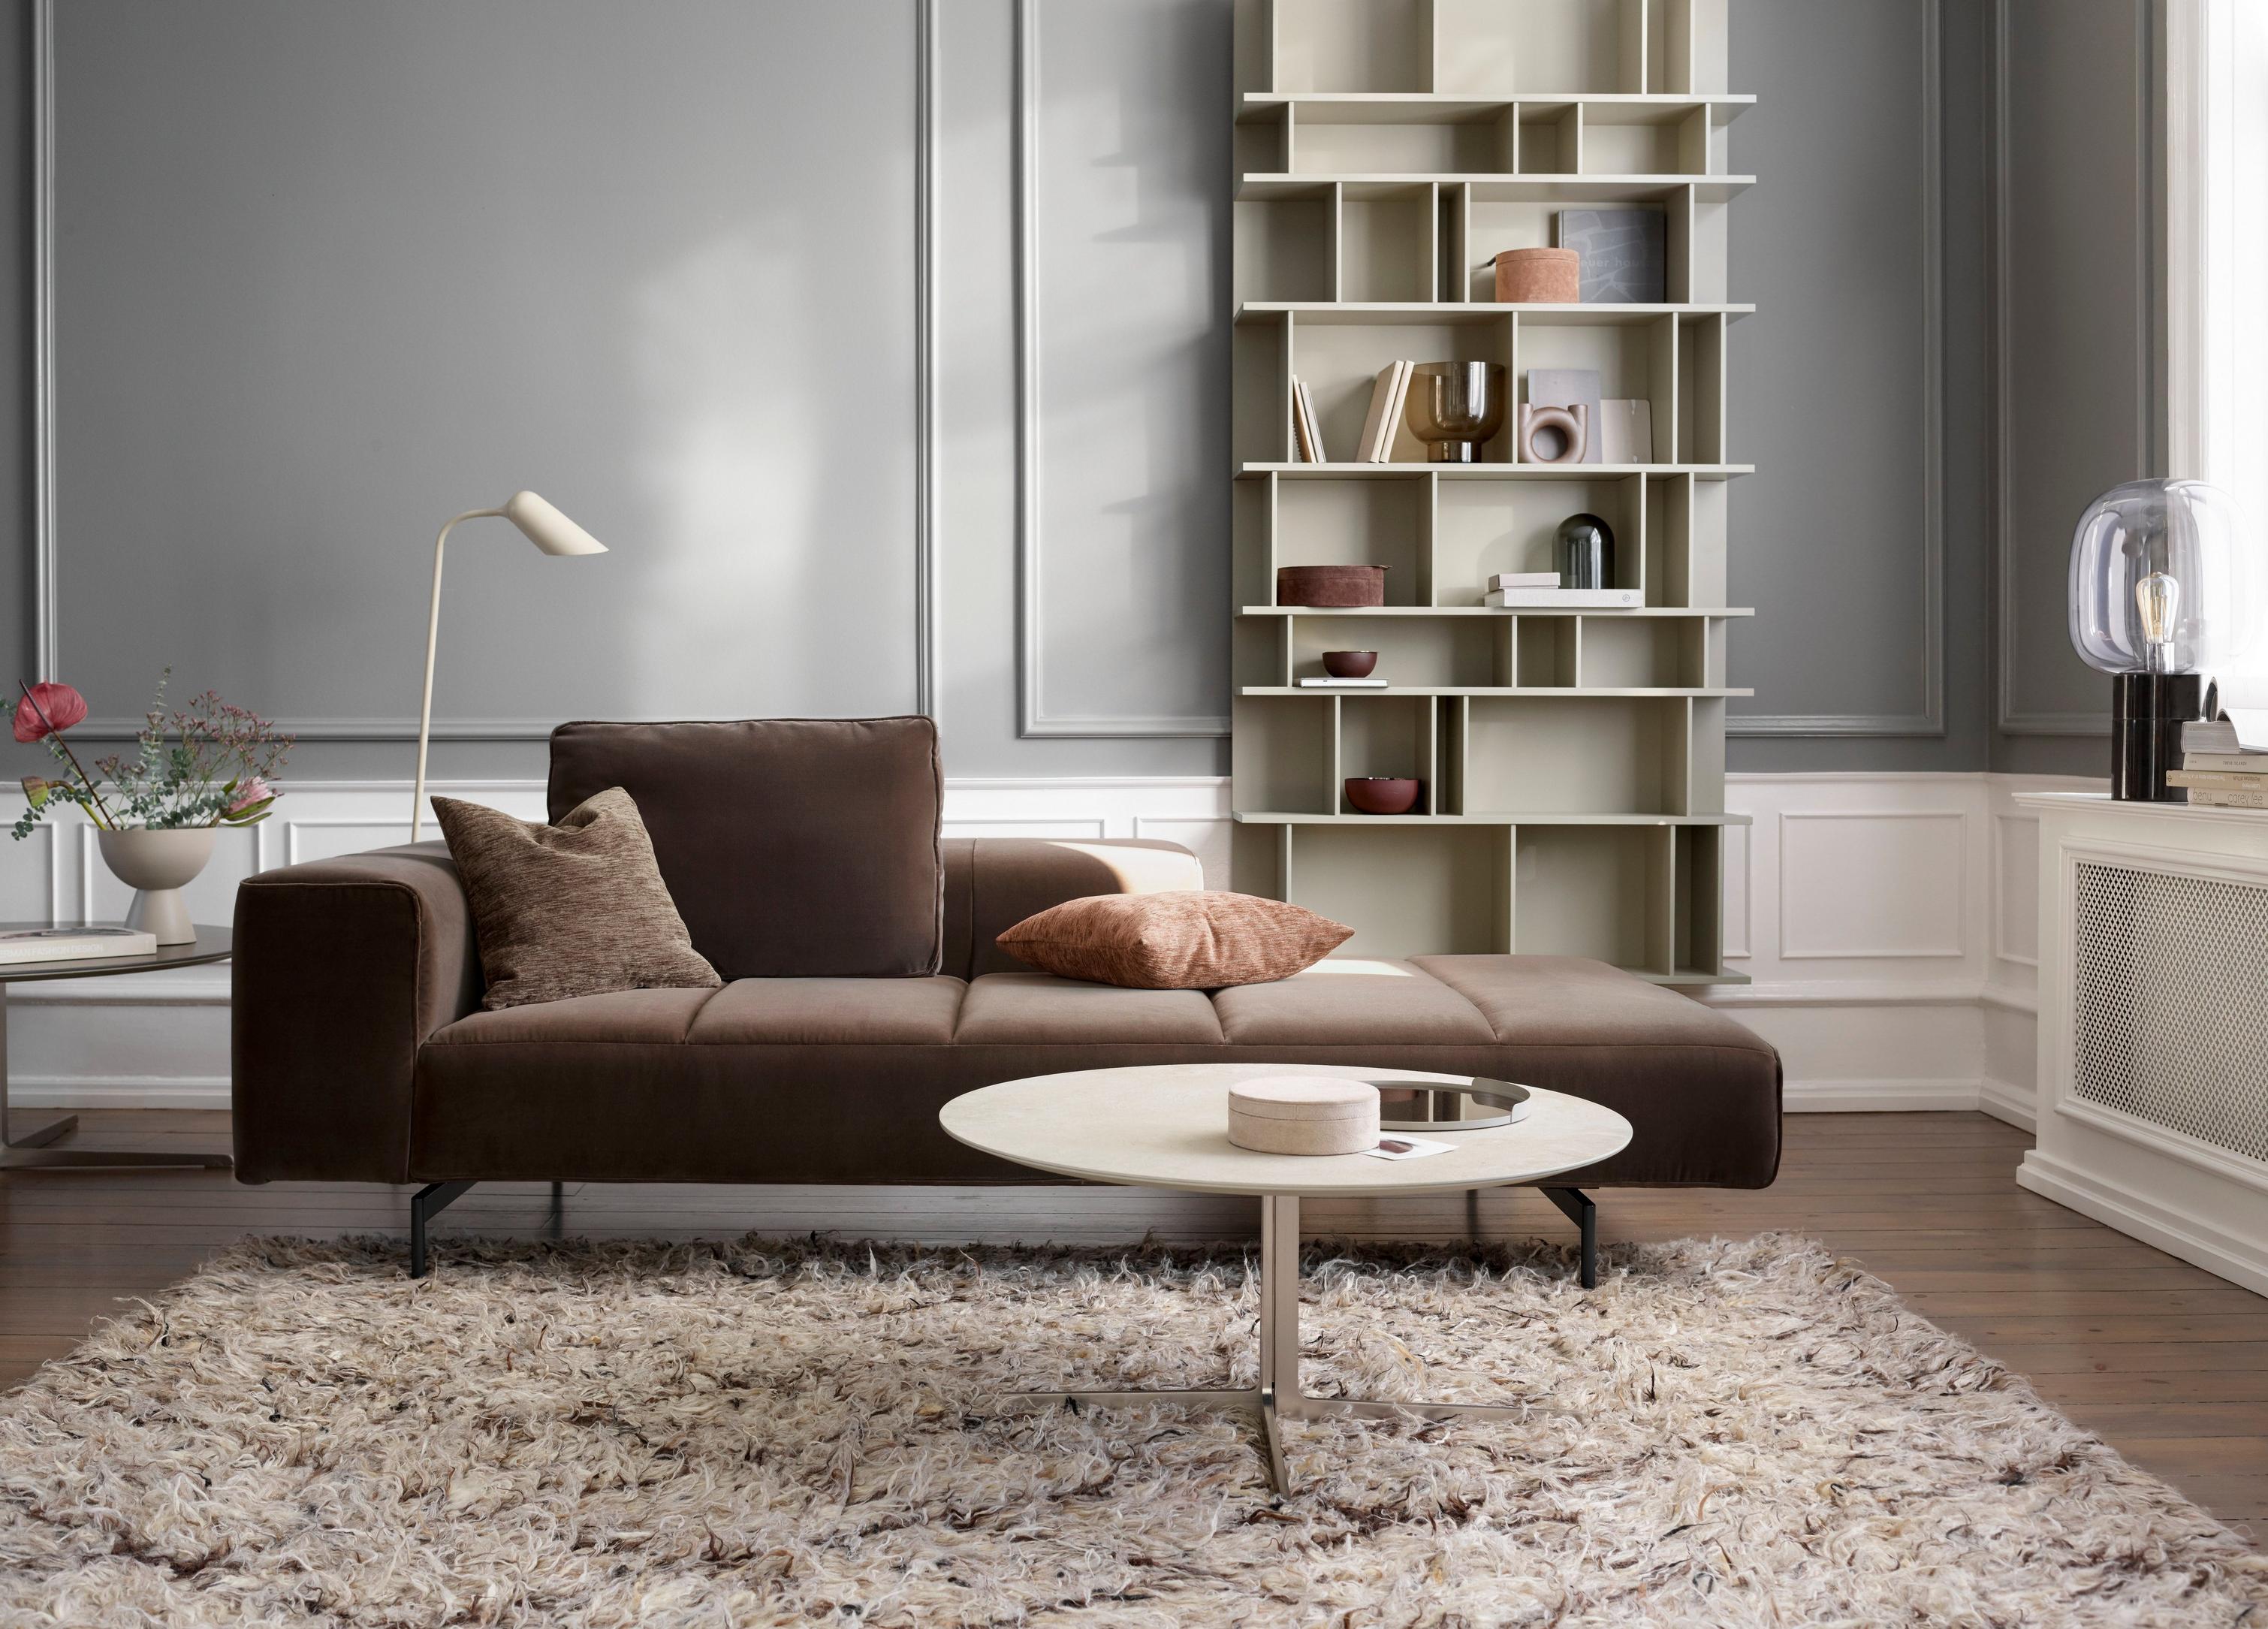 Pihenőelemes Amsterdam kanapé és Como fali rendszer egy nappaliban.